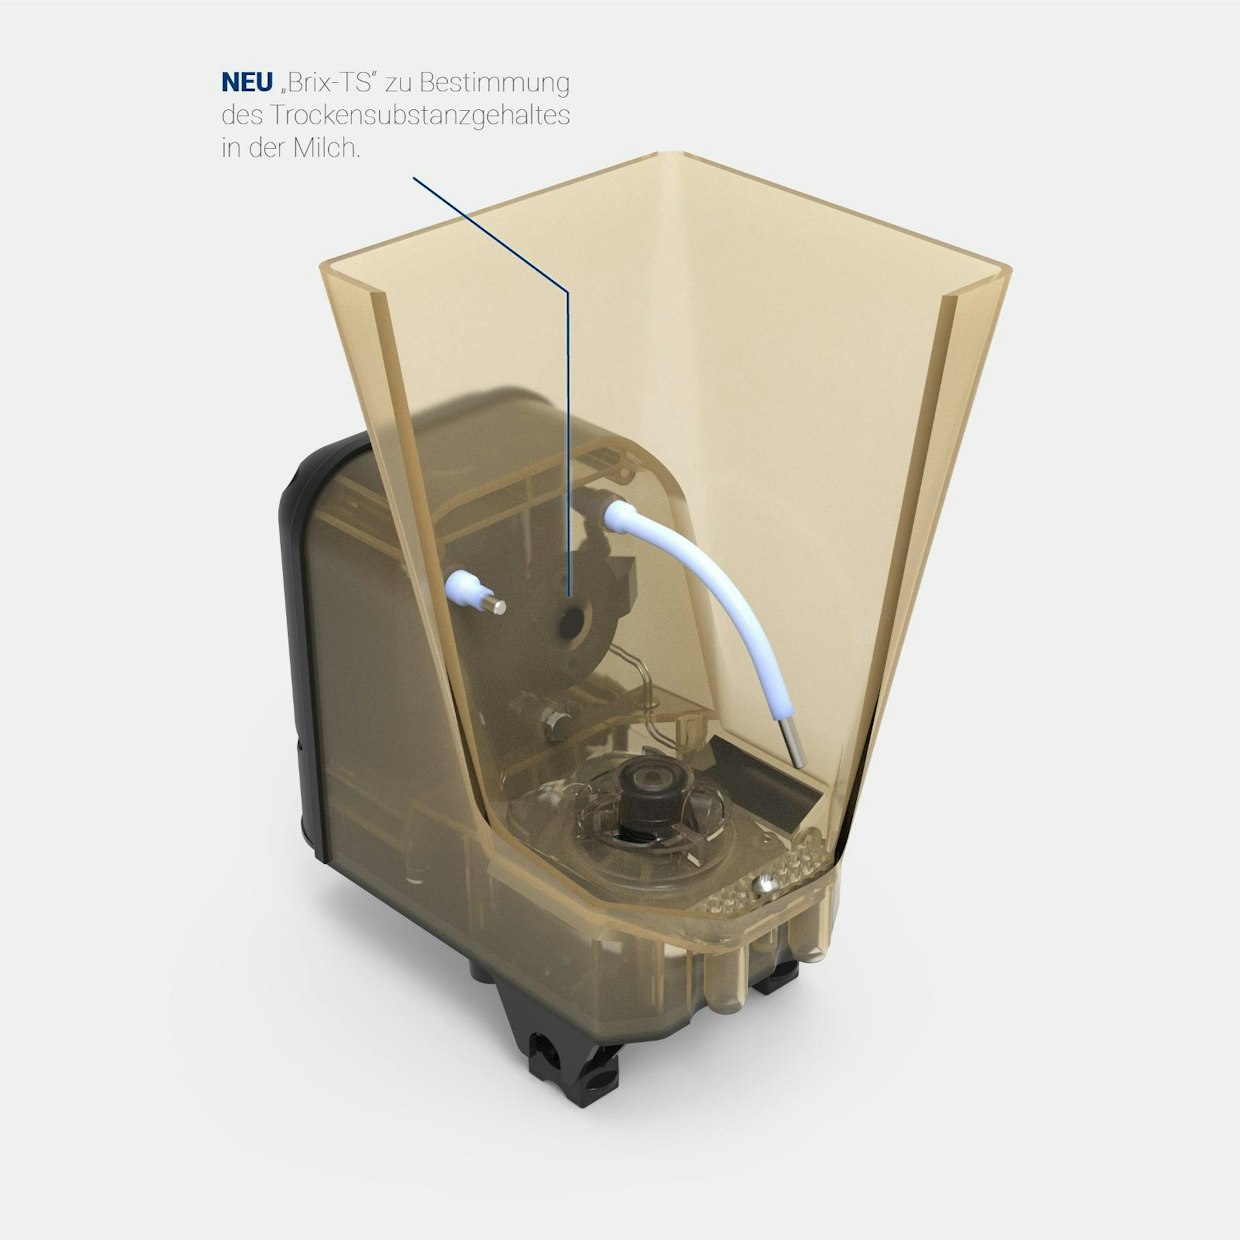 Holm &amp; Lauen vasikanjuottoautomaatteihin saa uutuutena Brix-TS Sensor -mittauksen. Laite tekee valmiille seokselle kuiva-ainemittauksen, jonka pohjalta se säätää juomarehun ja maidon tai veden sekoitussuhdetta automaattisesti.